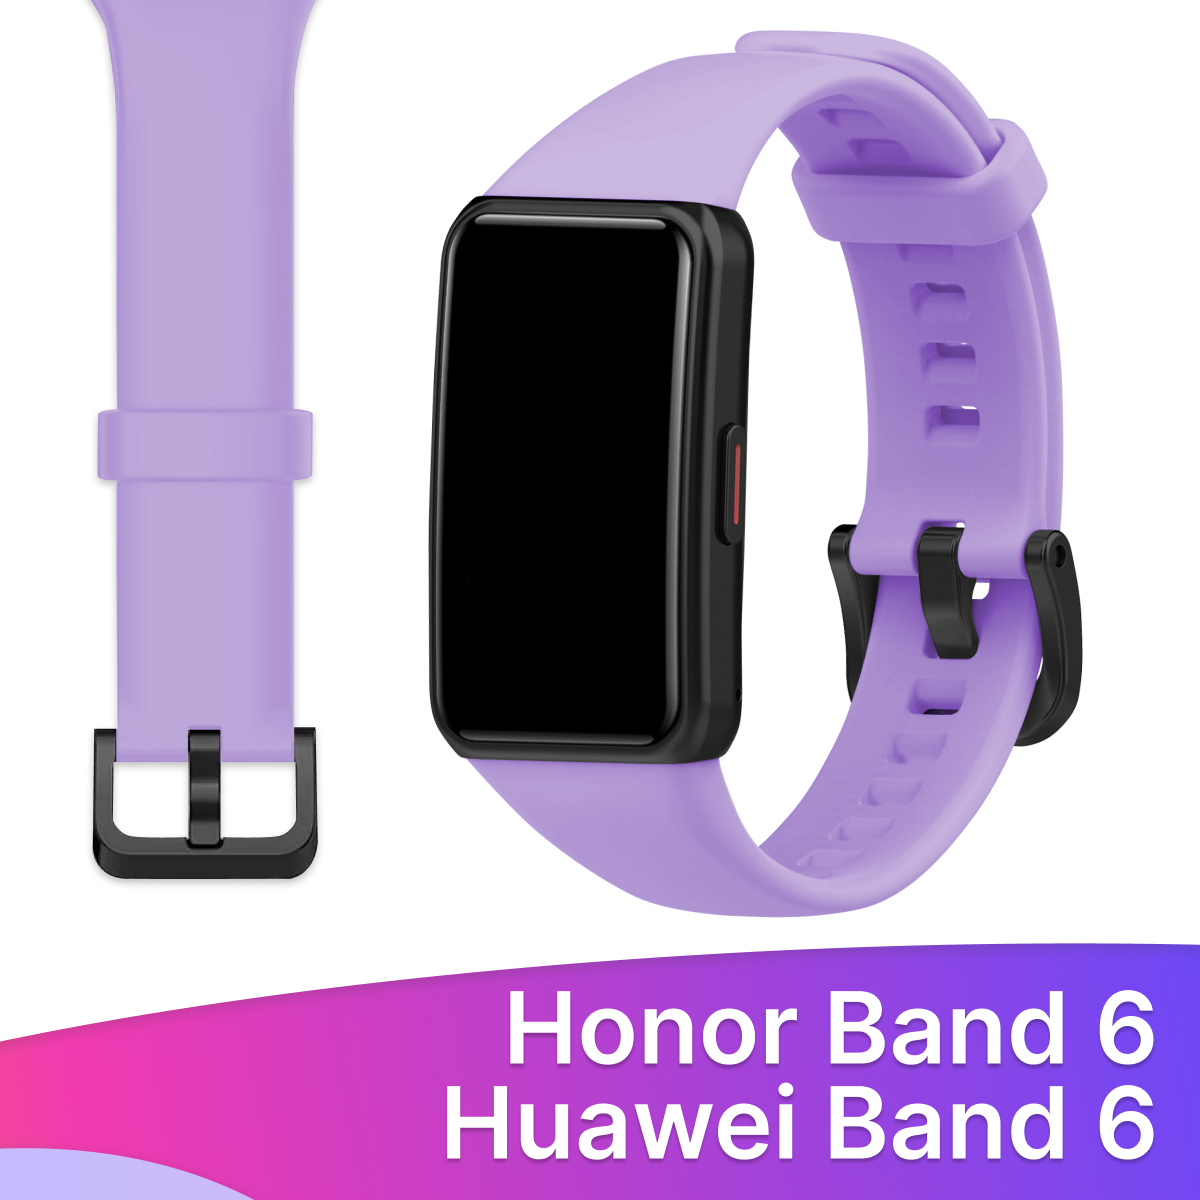 Силиконовый ремешок для Honor Band 6 и Huawei Band 6 / Сменный браслет для умных смарт часов/ Фитнес трекера Хонор 6/ Хуавей 6 Бледно-зеленый